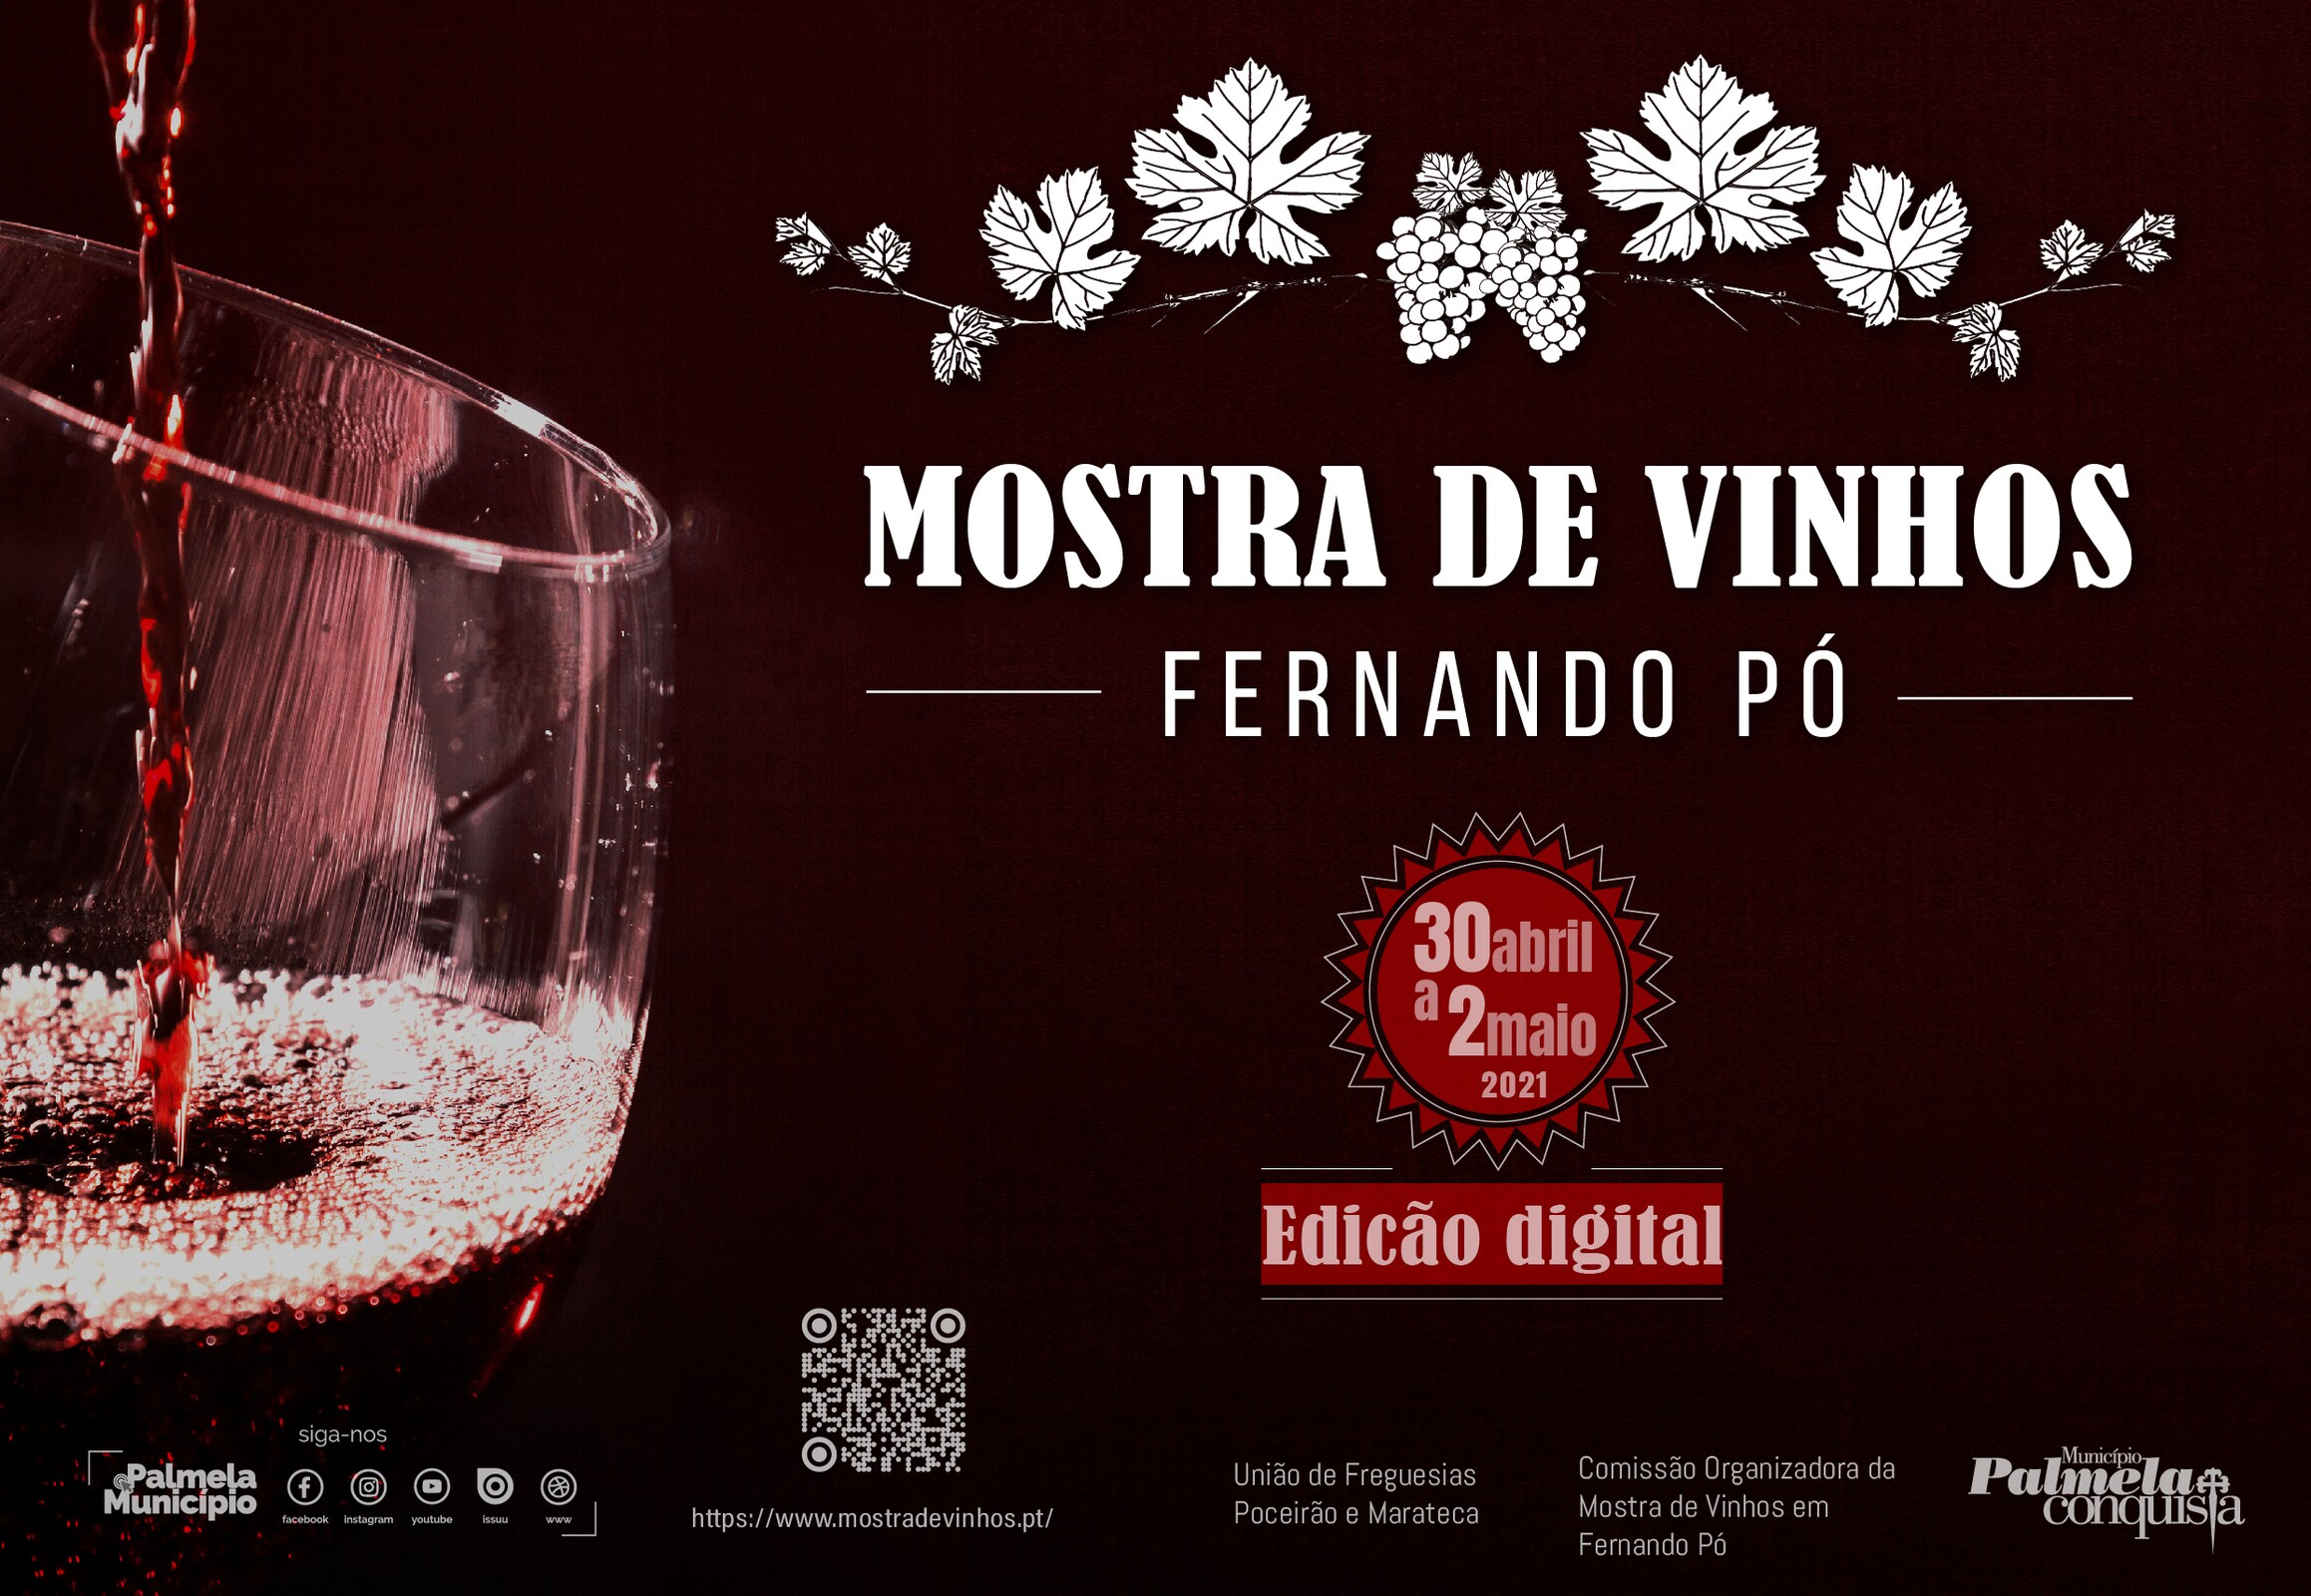 Mostra de Vinhos em Fernando Pó 2021: 30 abril a 2 maio em formato digital